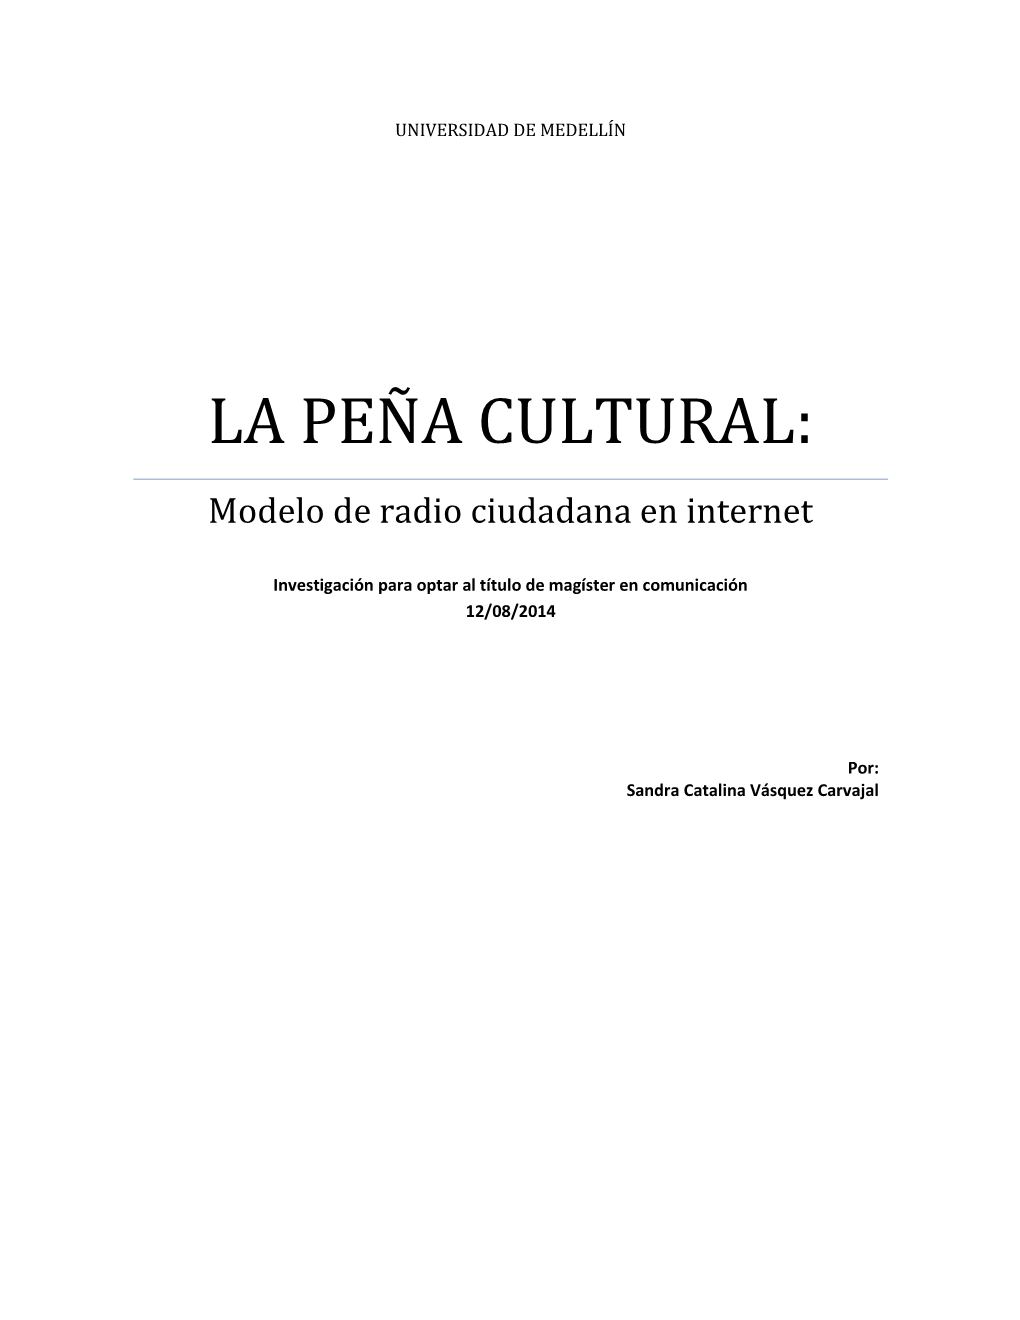 LA PEÑA CULTURAL: Modelo De Radio Ciudadana En Internet